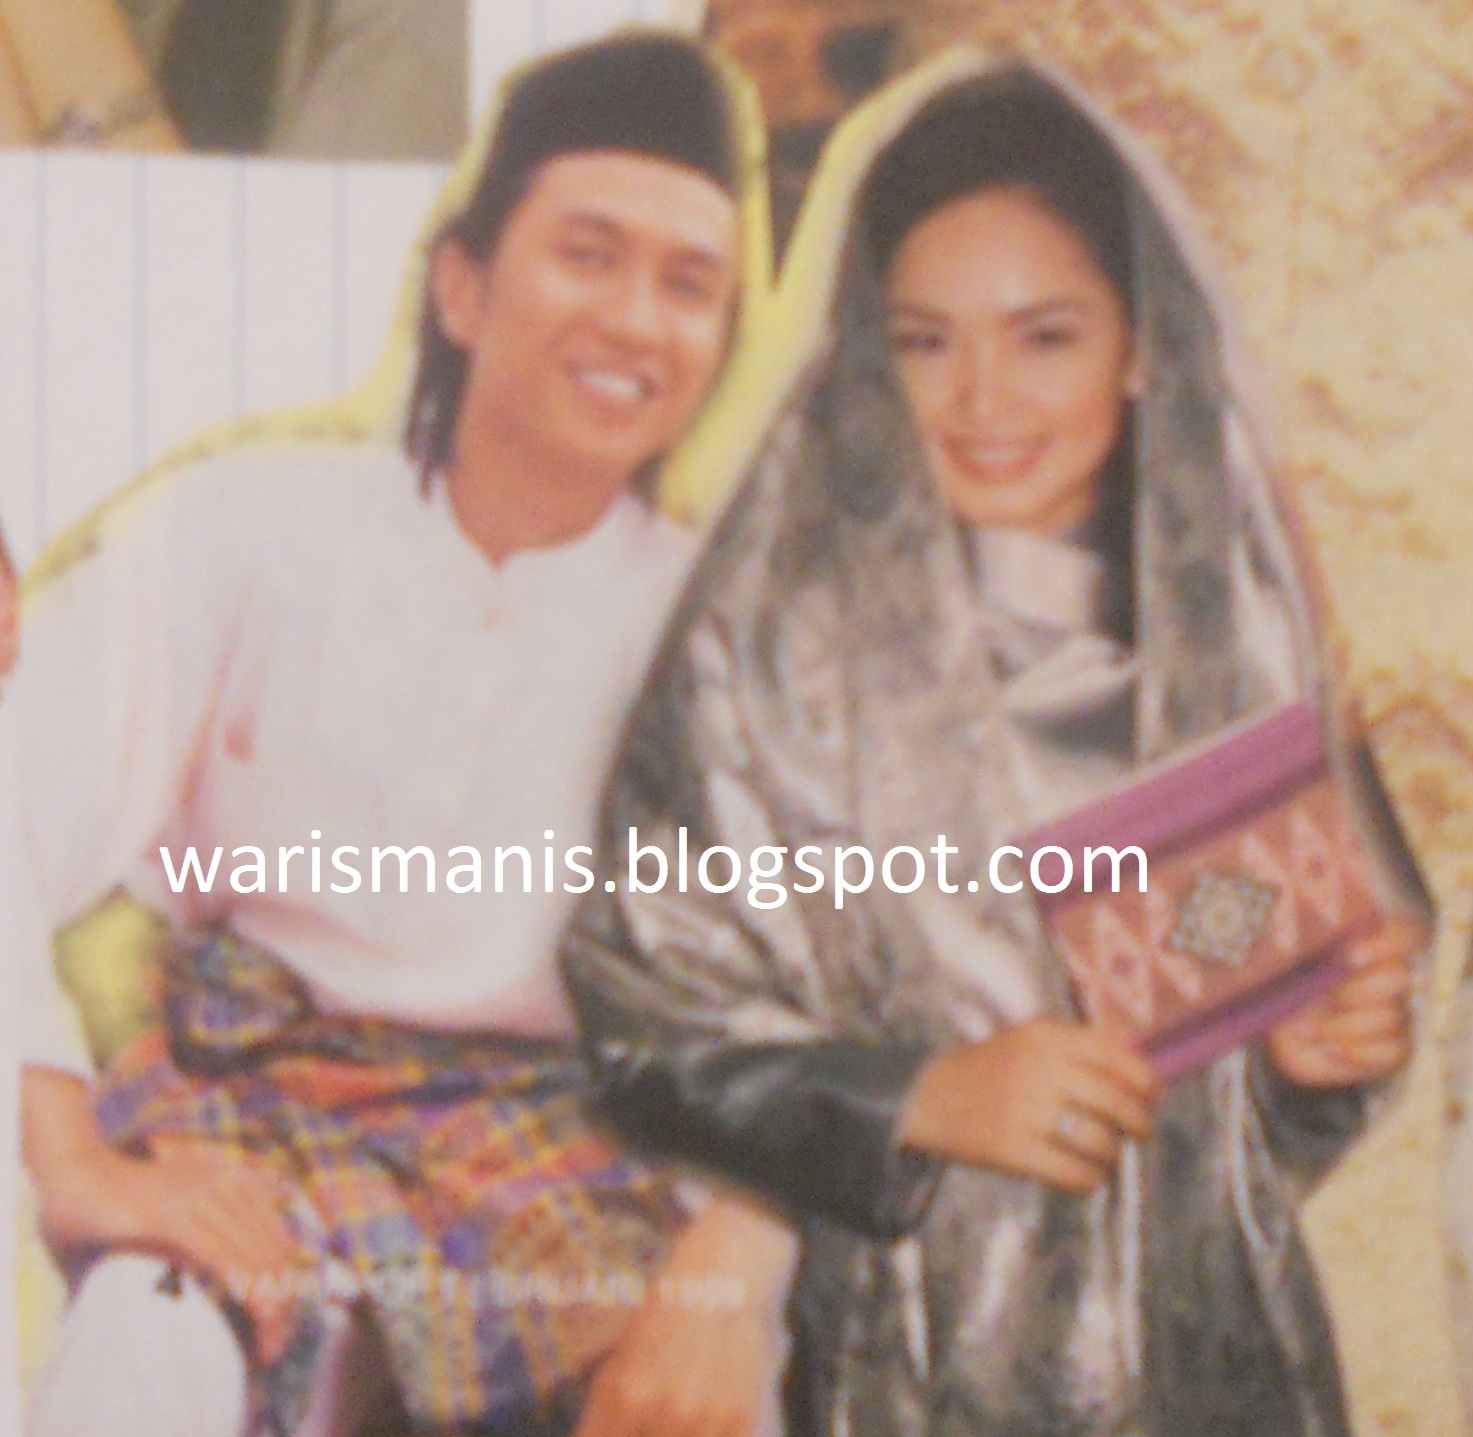 Waris Manis: Siti Nurhaliza Berlakon Dengan Zamani